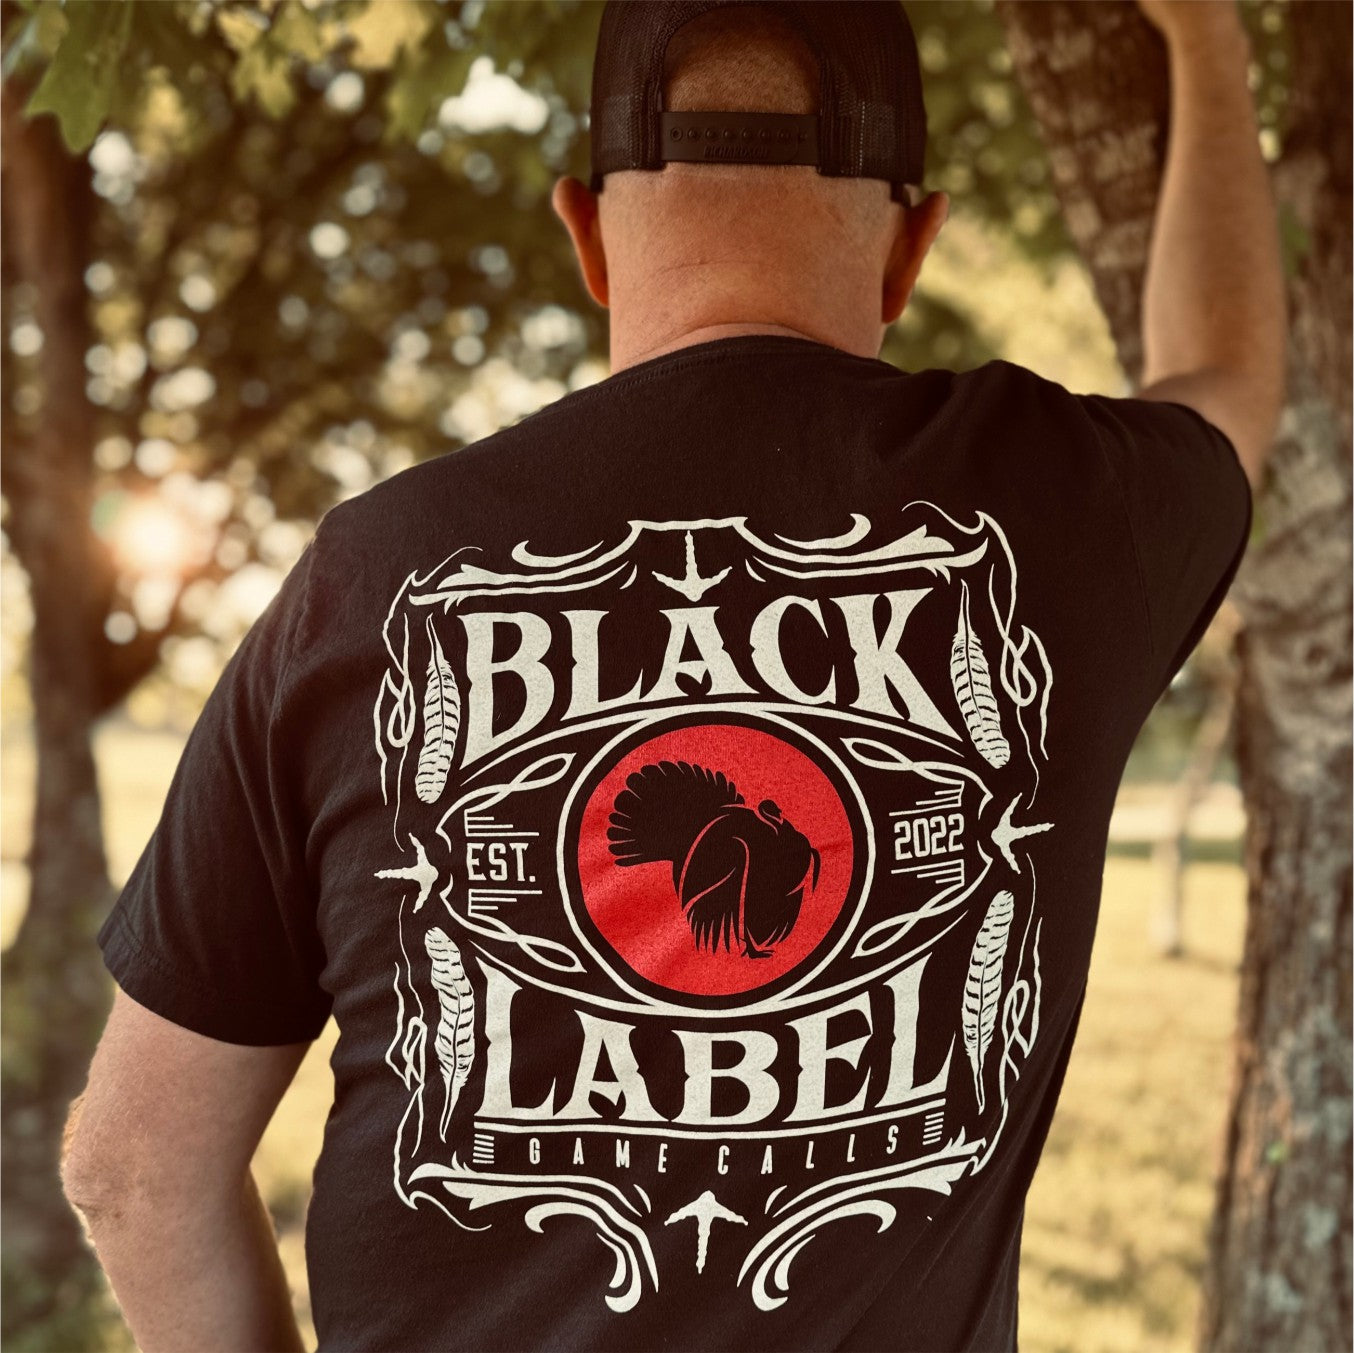 Vintage T-Shirt - Black – Label Game Calls